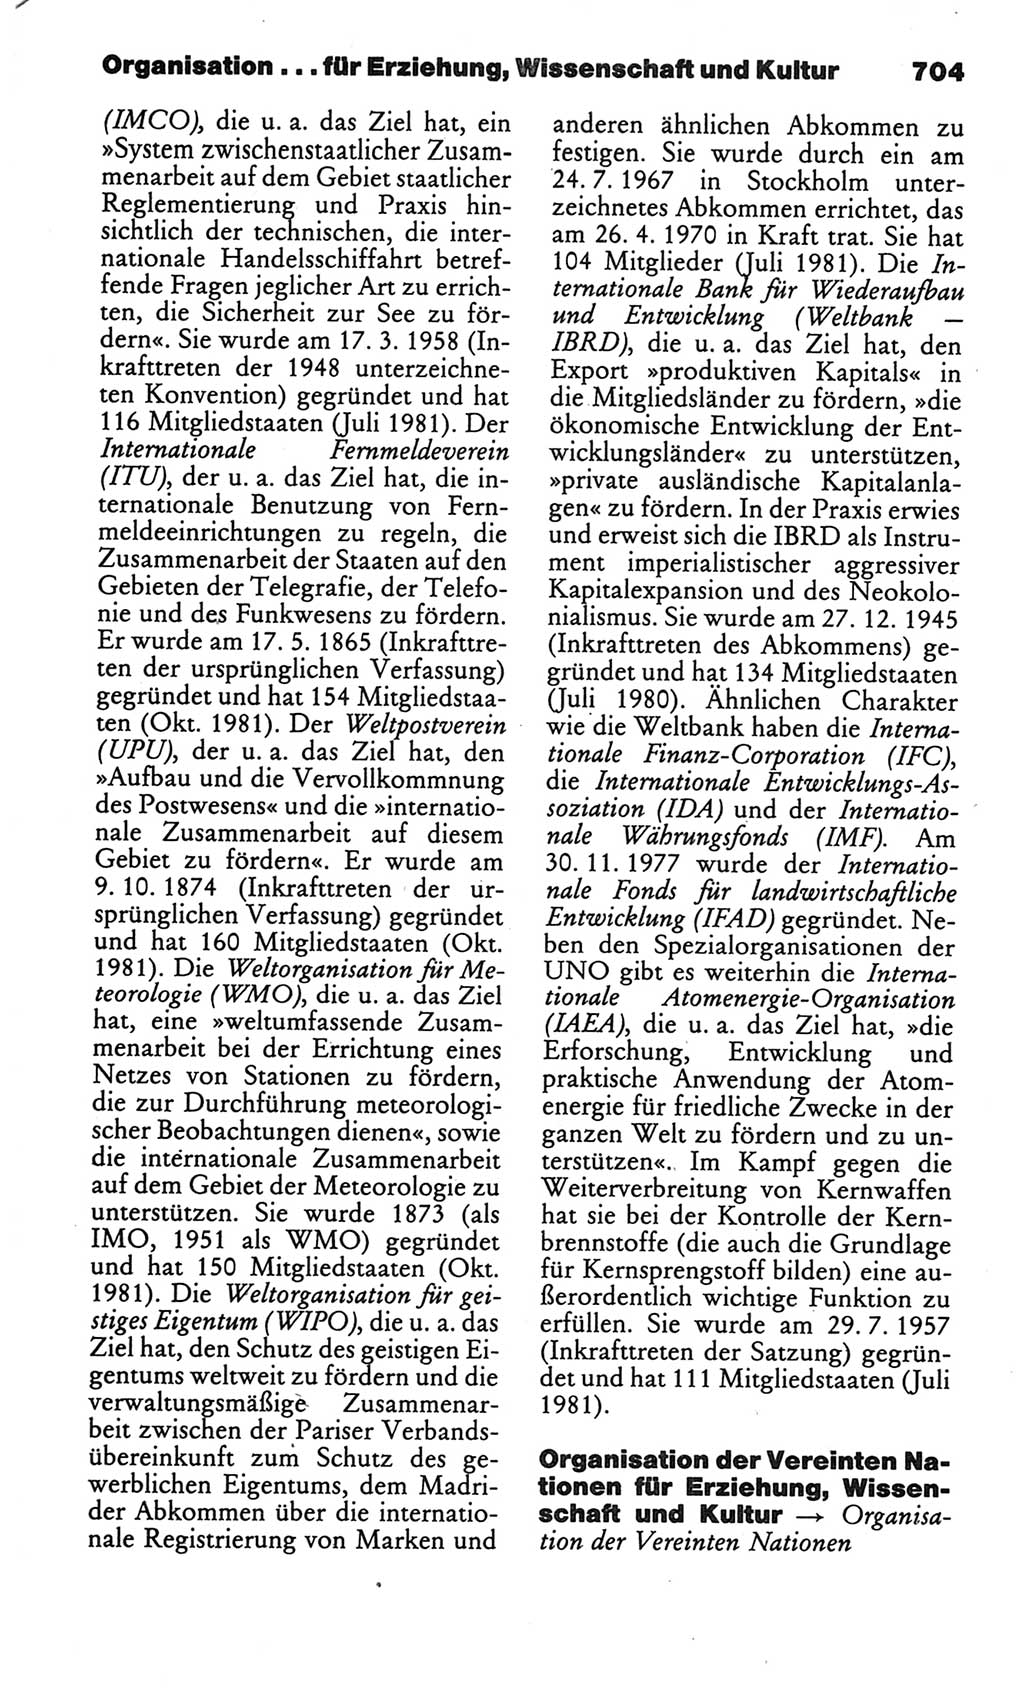 Kleines politisches Wörterbuch [Deutsche Demokratische Republik (DDR)] 1986, Seite 704 (Kl. pol. Wb. DDR 1986, S. 704)